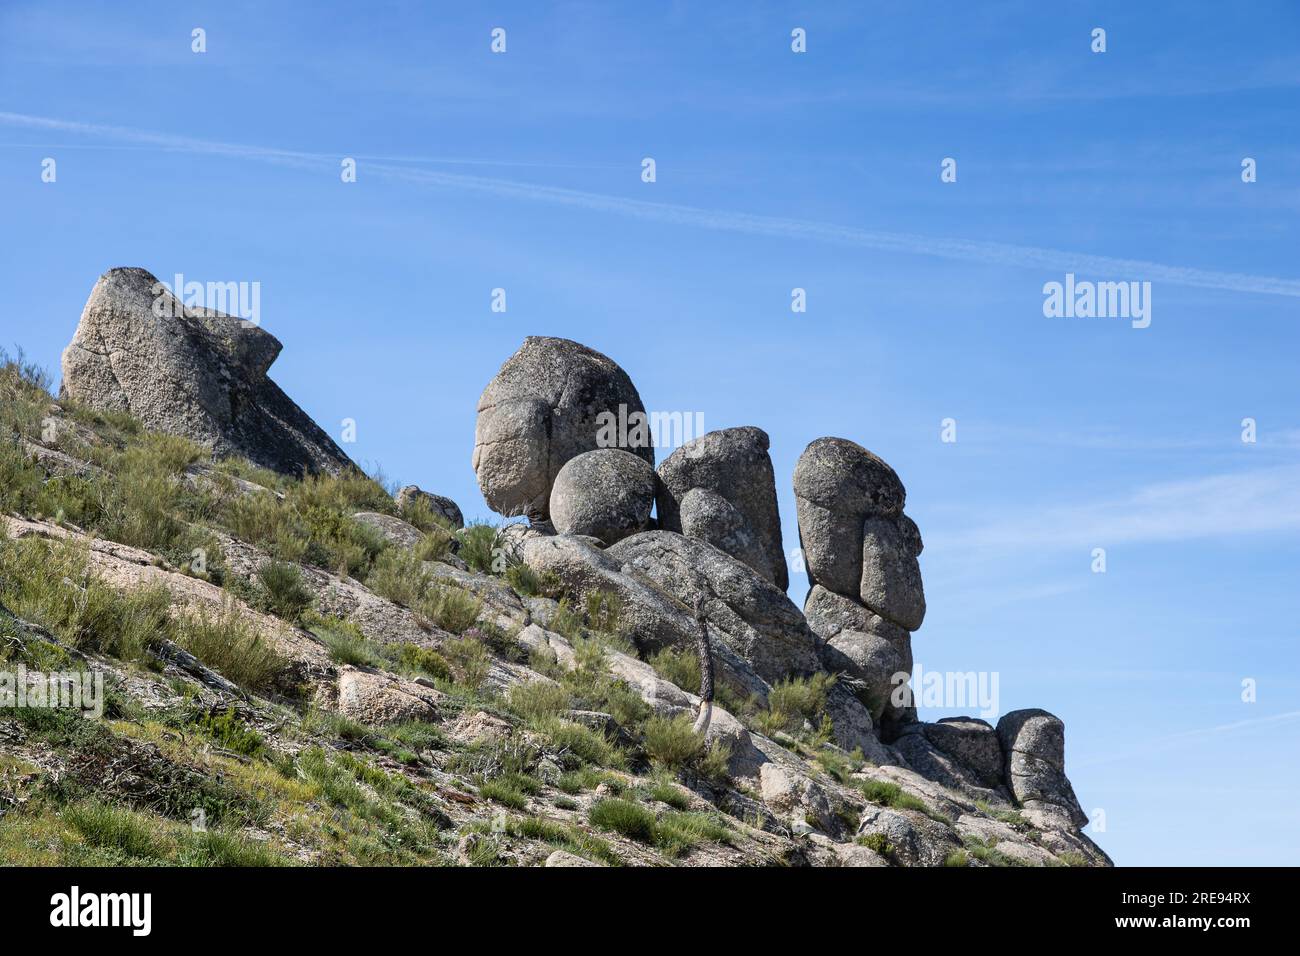 Cabeca do Velho, un'importante formazione rocciosa della testa del vecchio, catturata in una giornata di sole, situata in Portogallo Foto Stock